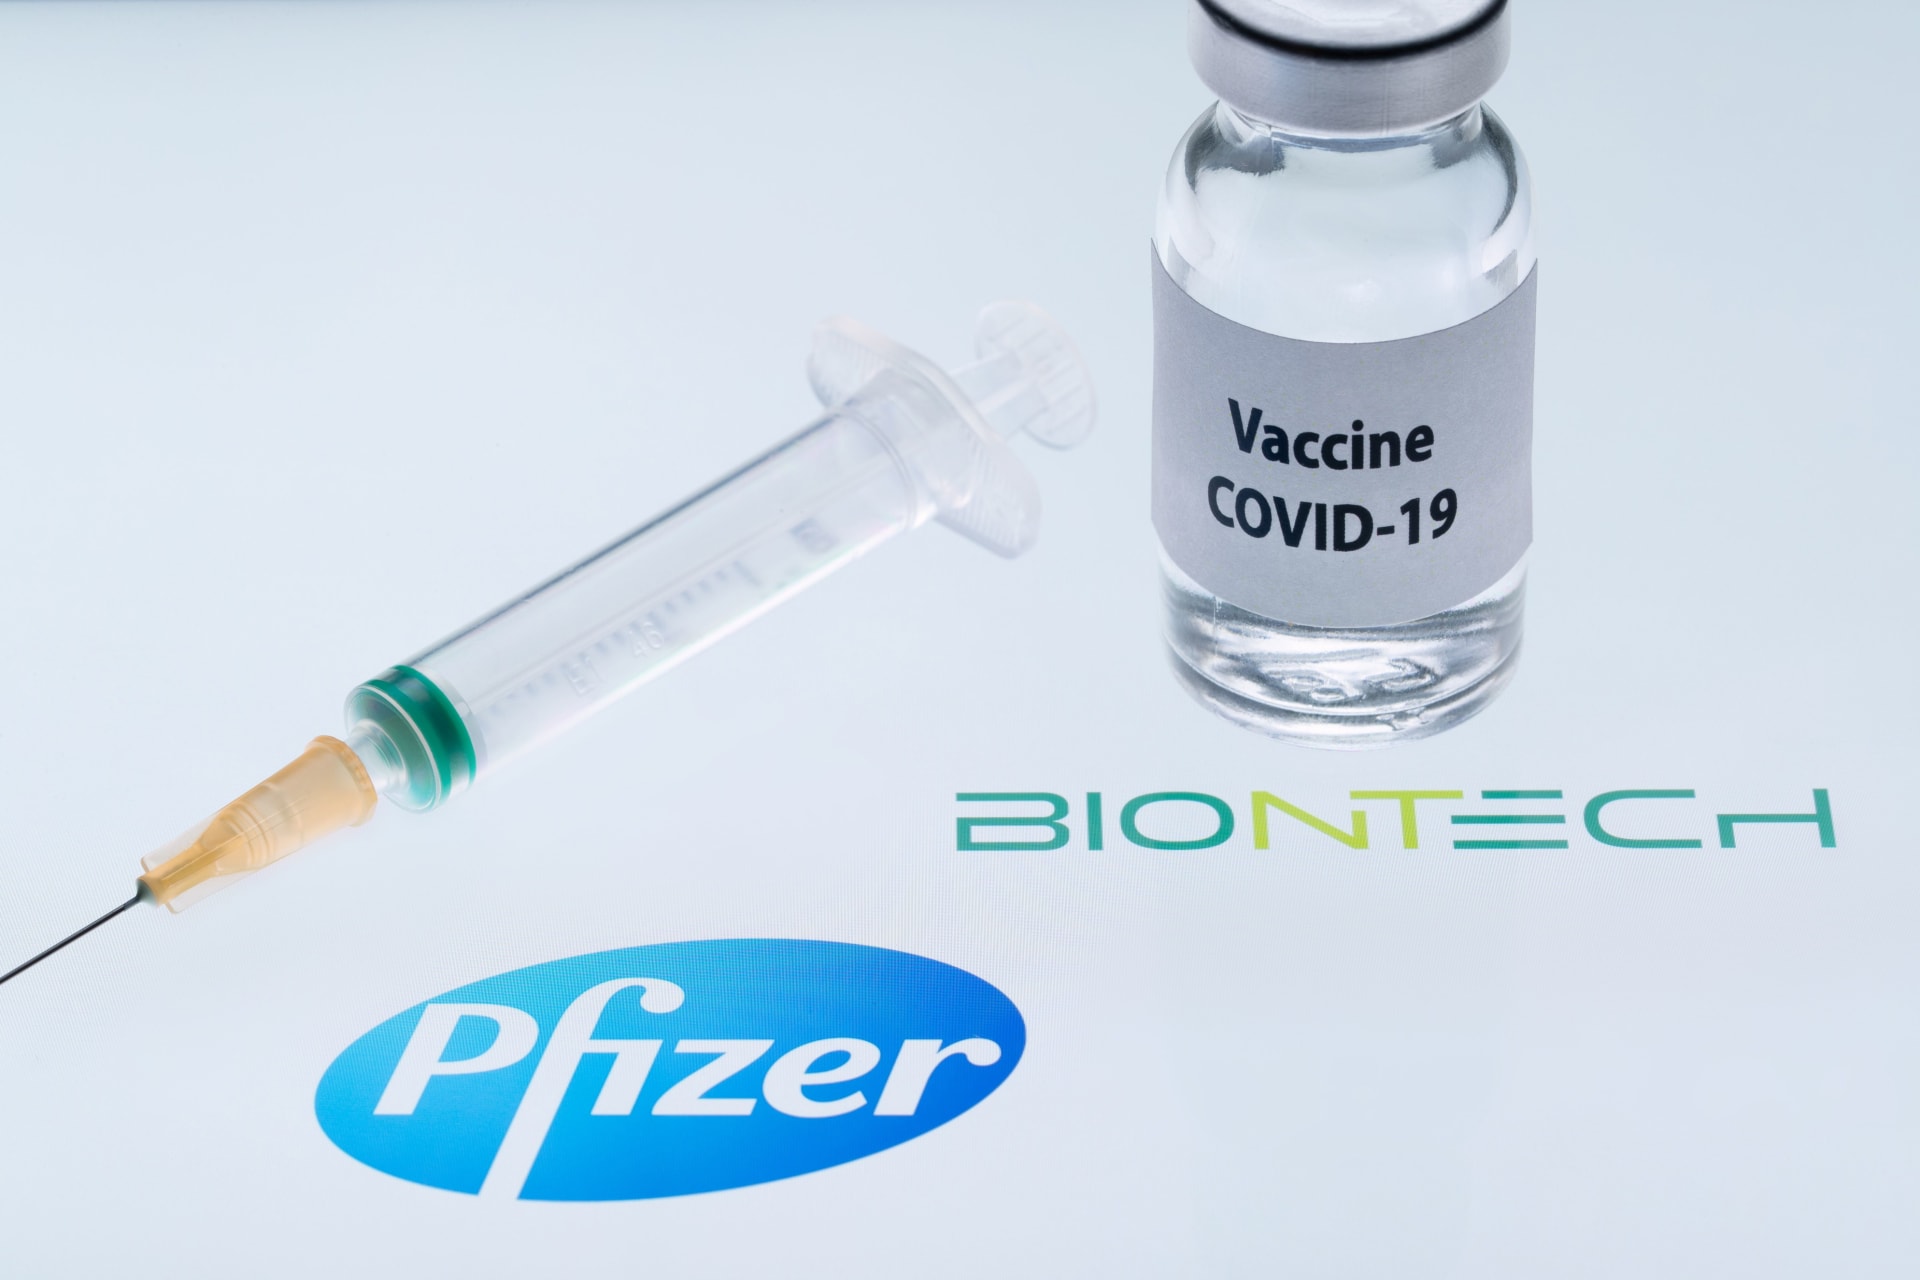 شركتا "فايزر" و"بيو إن تك" تُعلنان عن حصولهما على أول موافقة تنظيمية للقاح فيروس كورونا في المملكة المتحدة